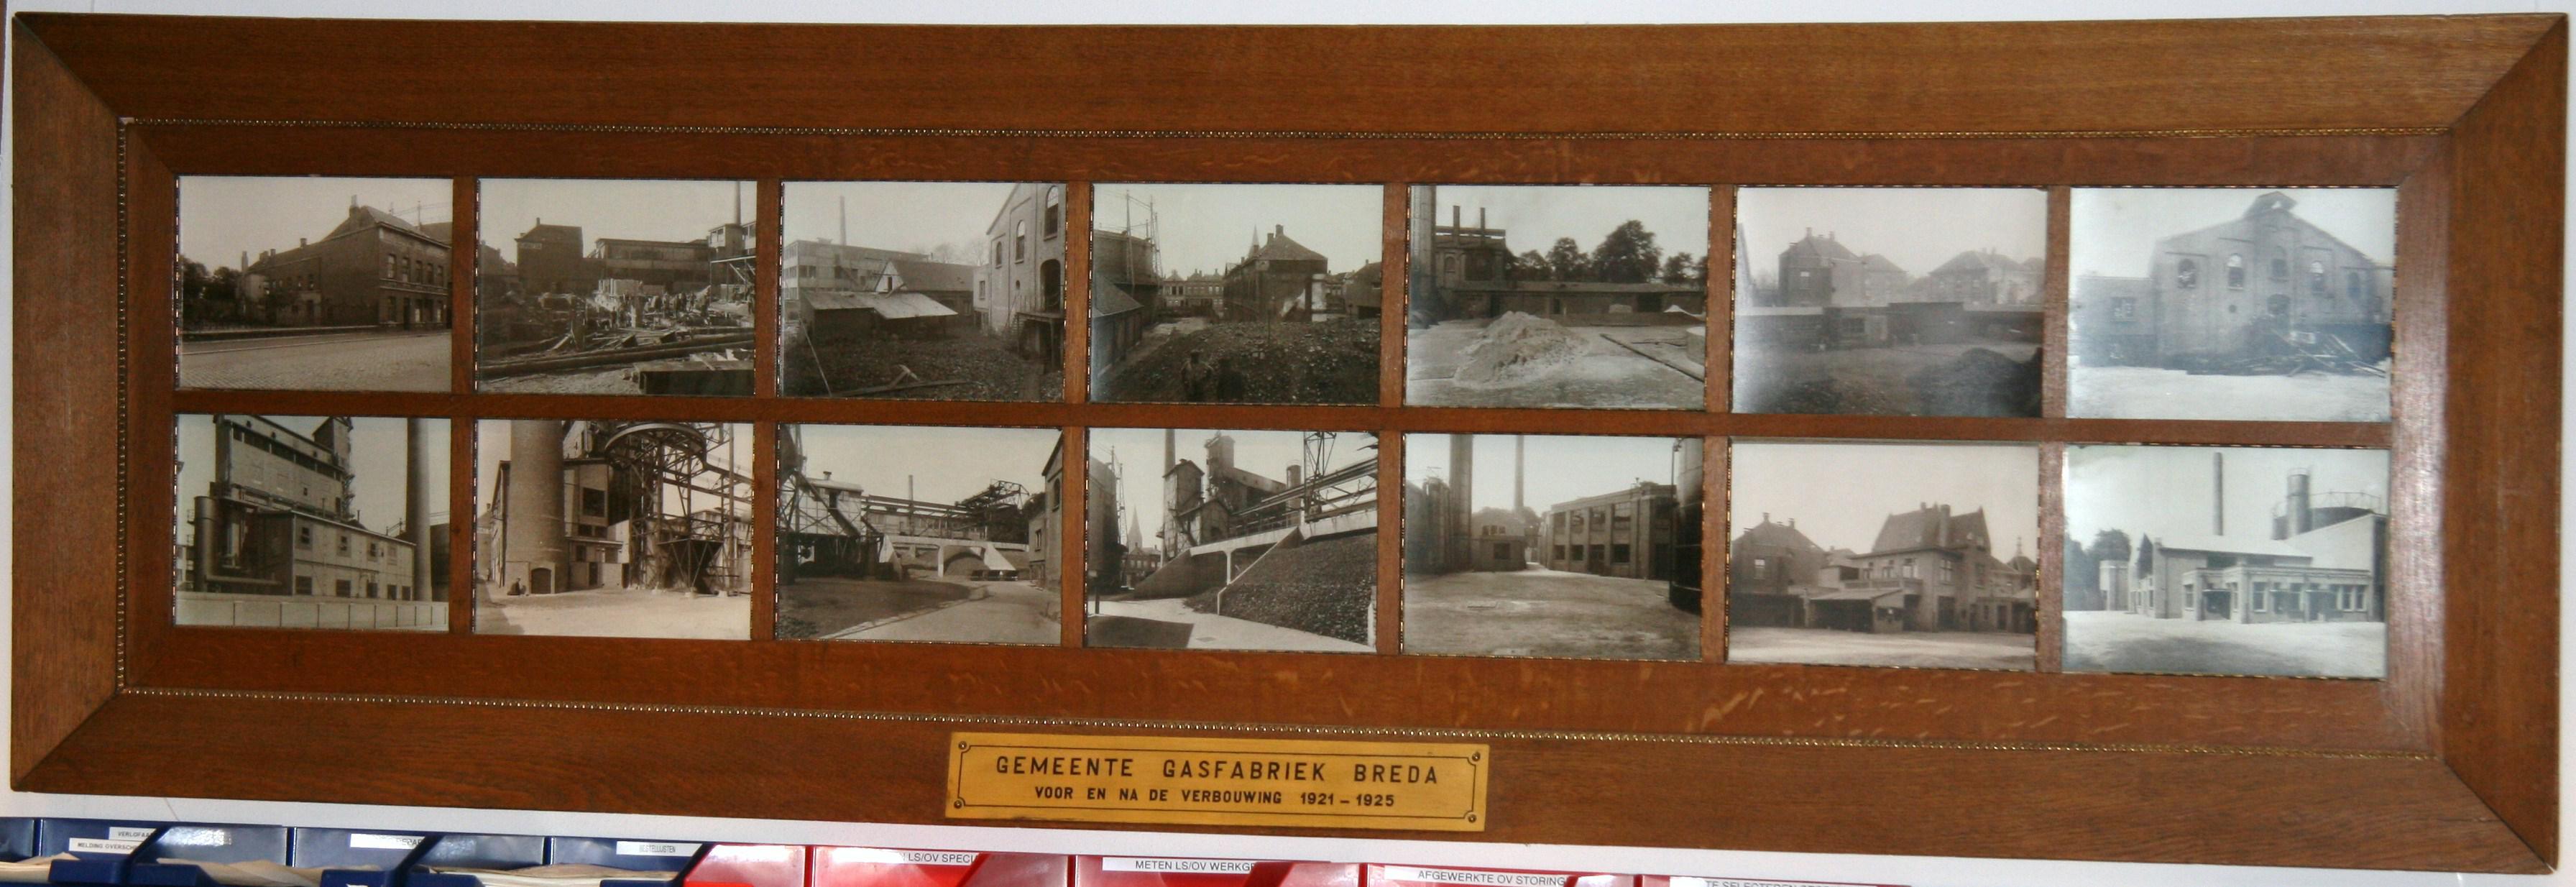 Gemeente Gasfabriek van Breda 1921 1925